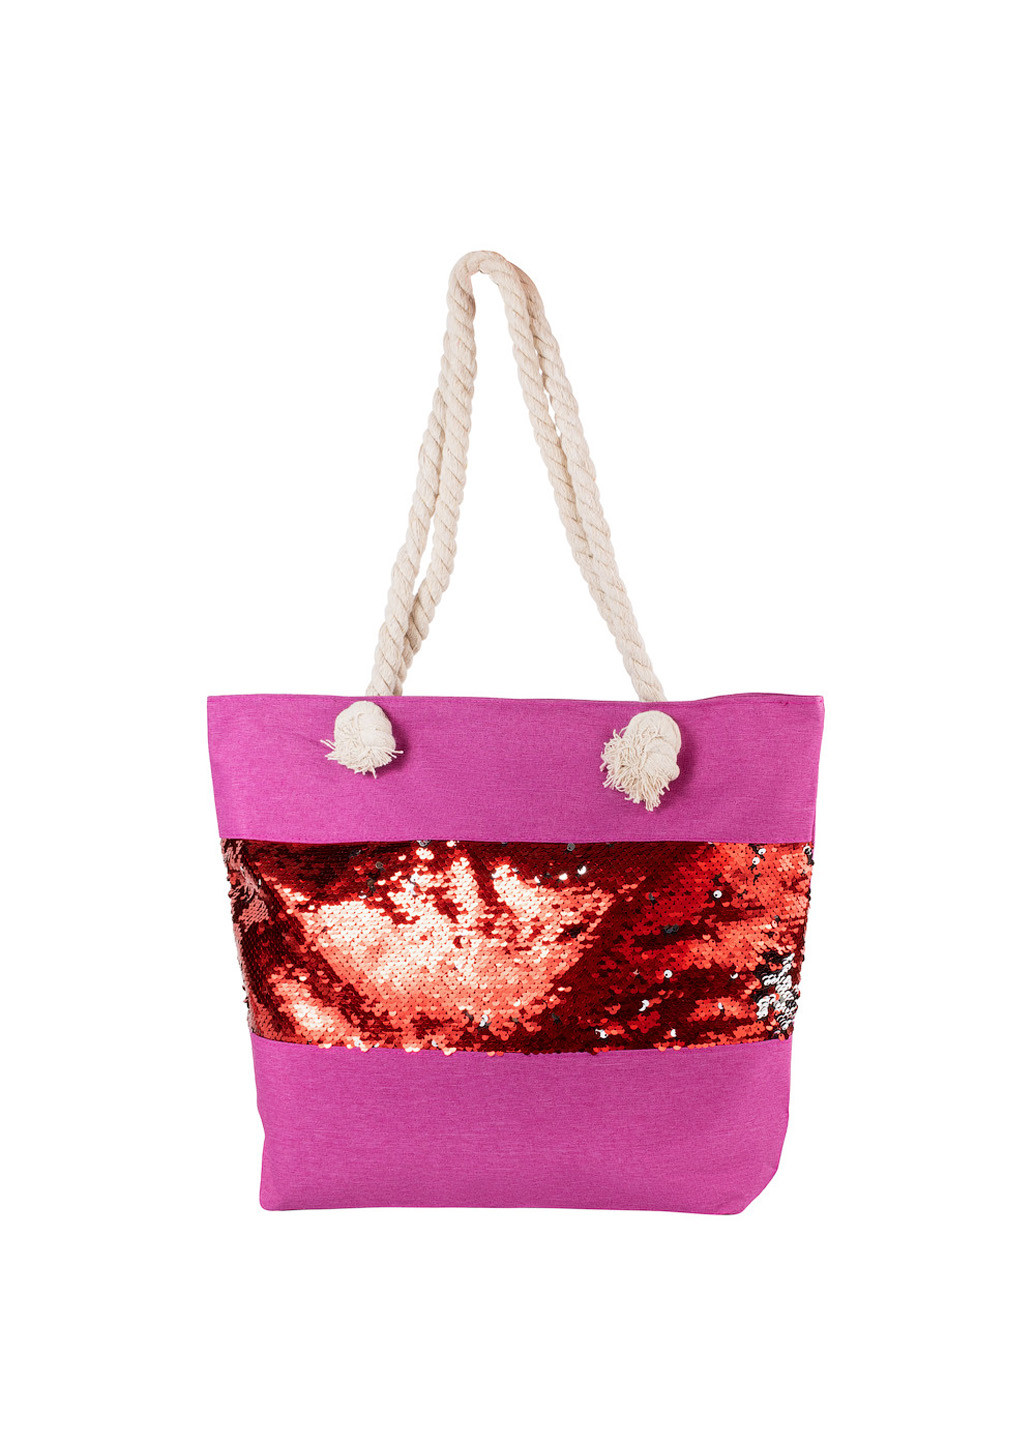 Женская пляжная сумка 43х33х12 см Eterno розовая пляжная